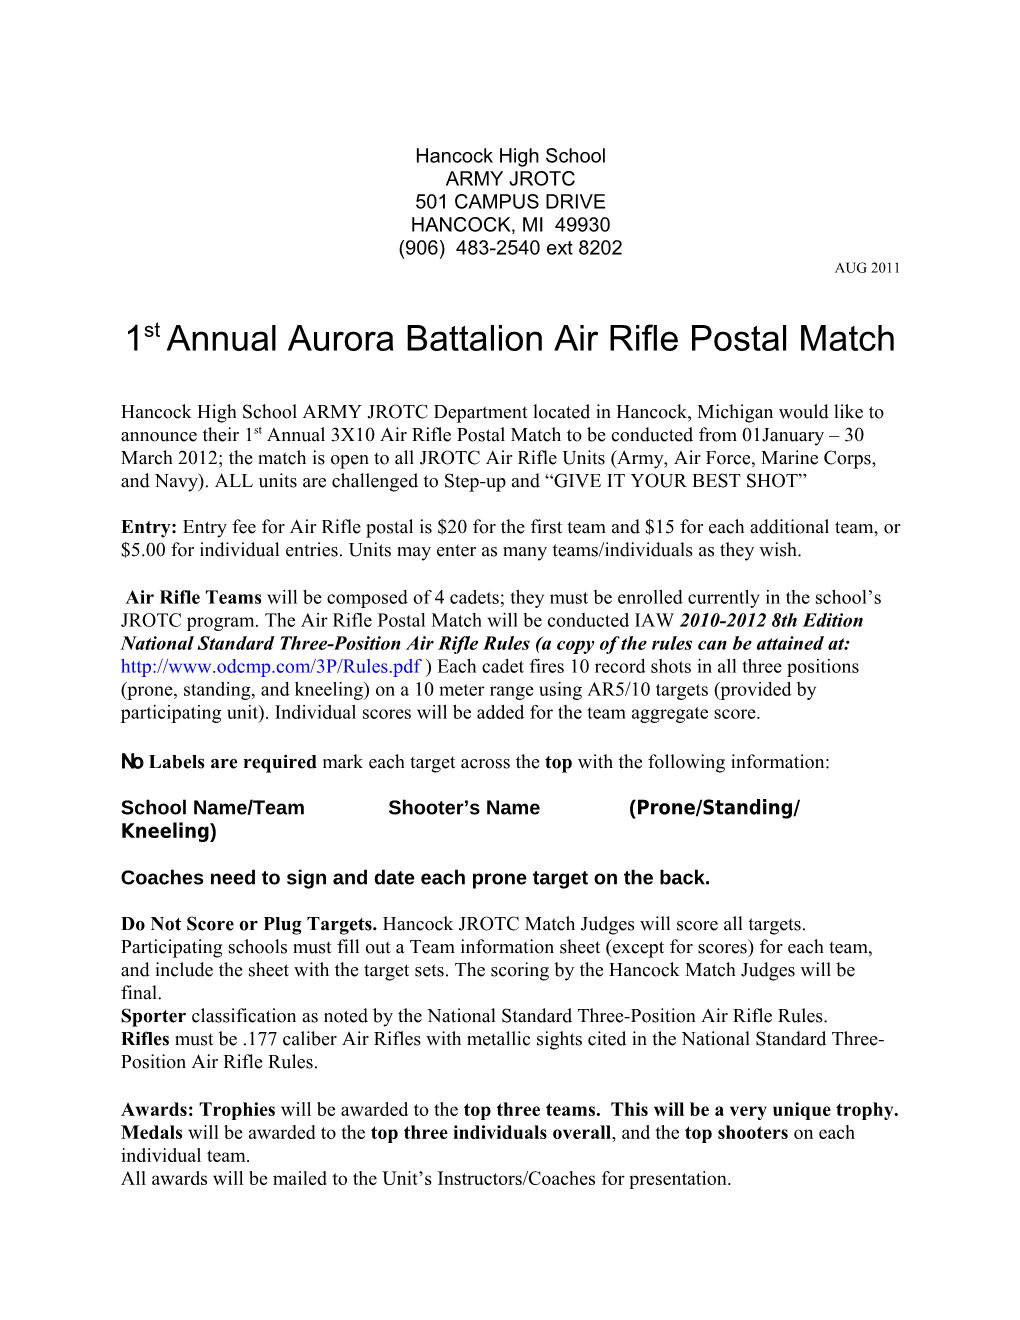 1St Annual Aurora Battalion Air Rifle Postal Match